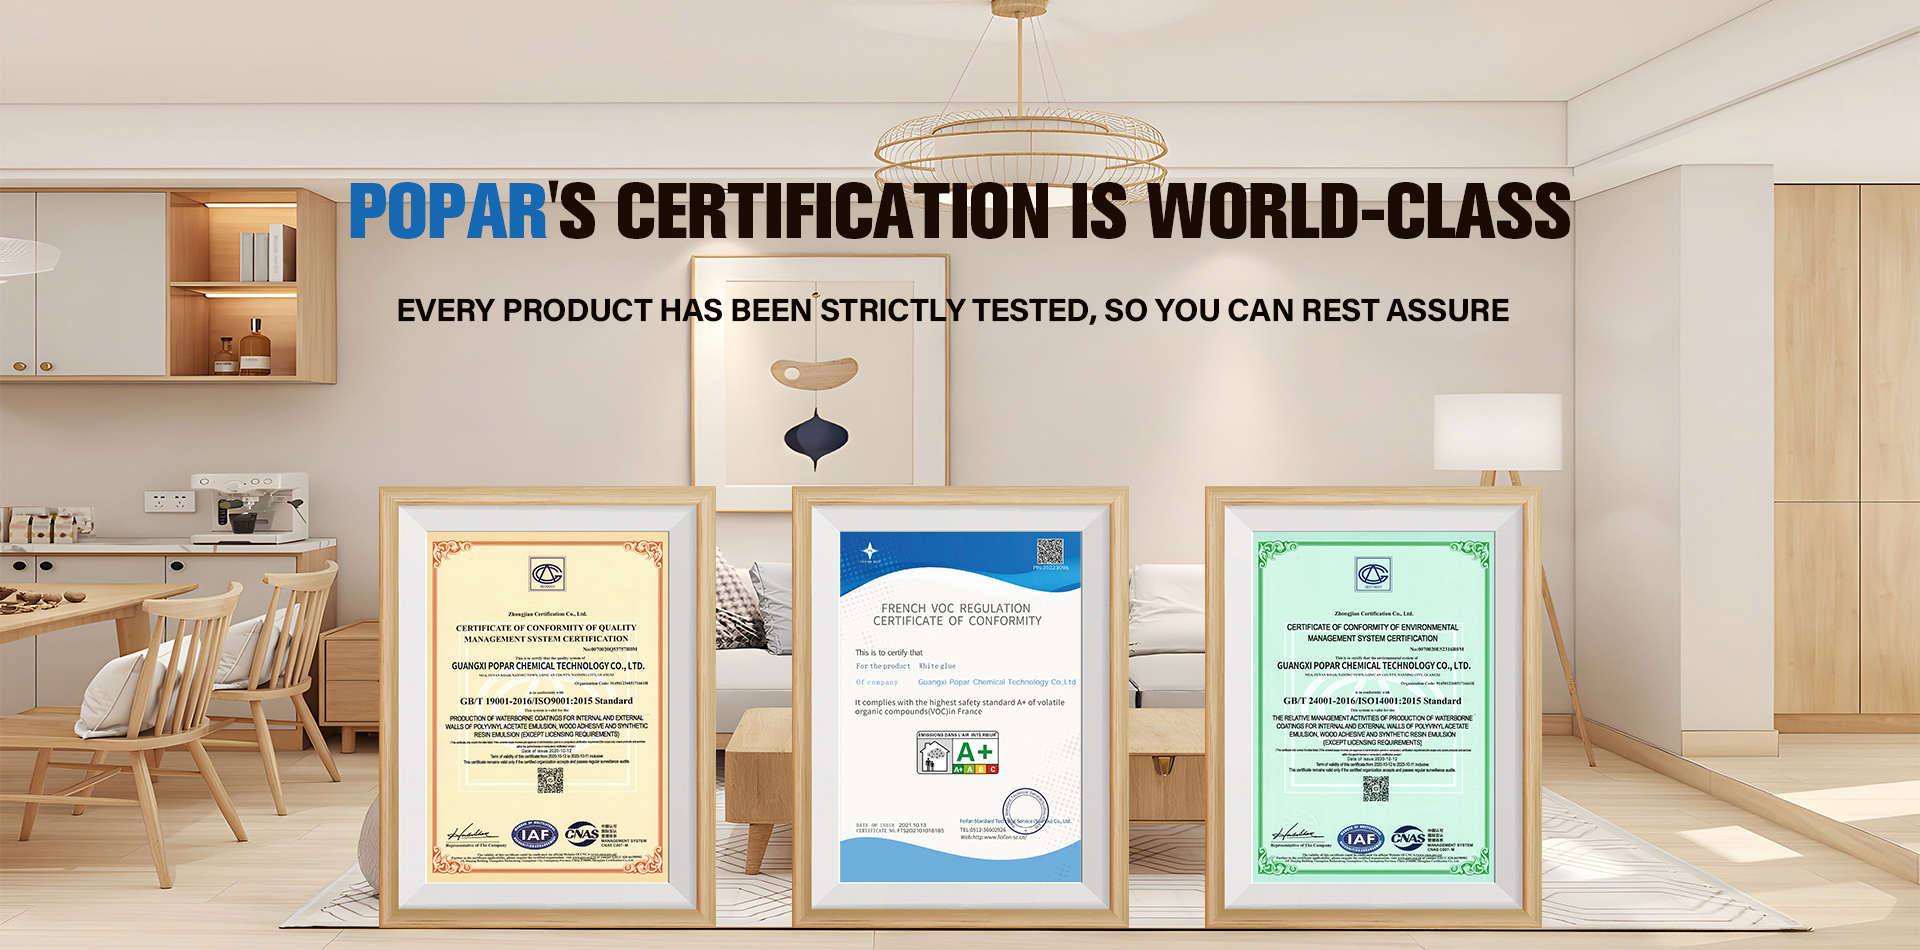 Popar's Certification Is World-Class